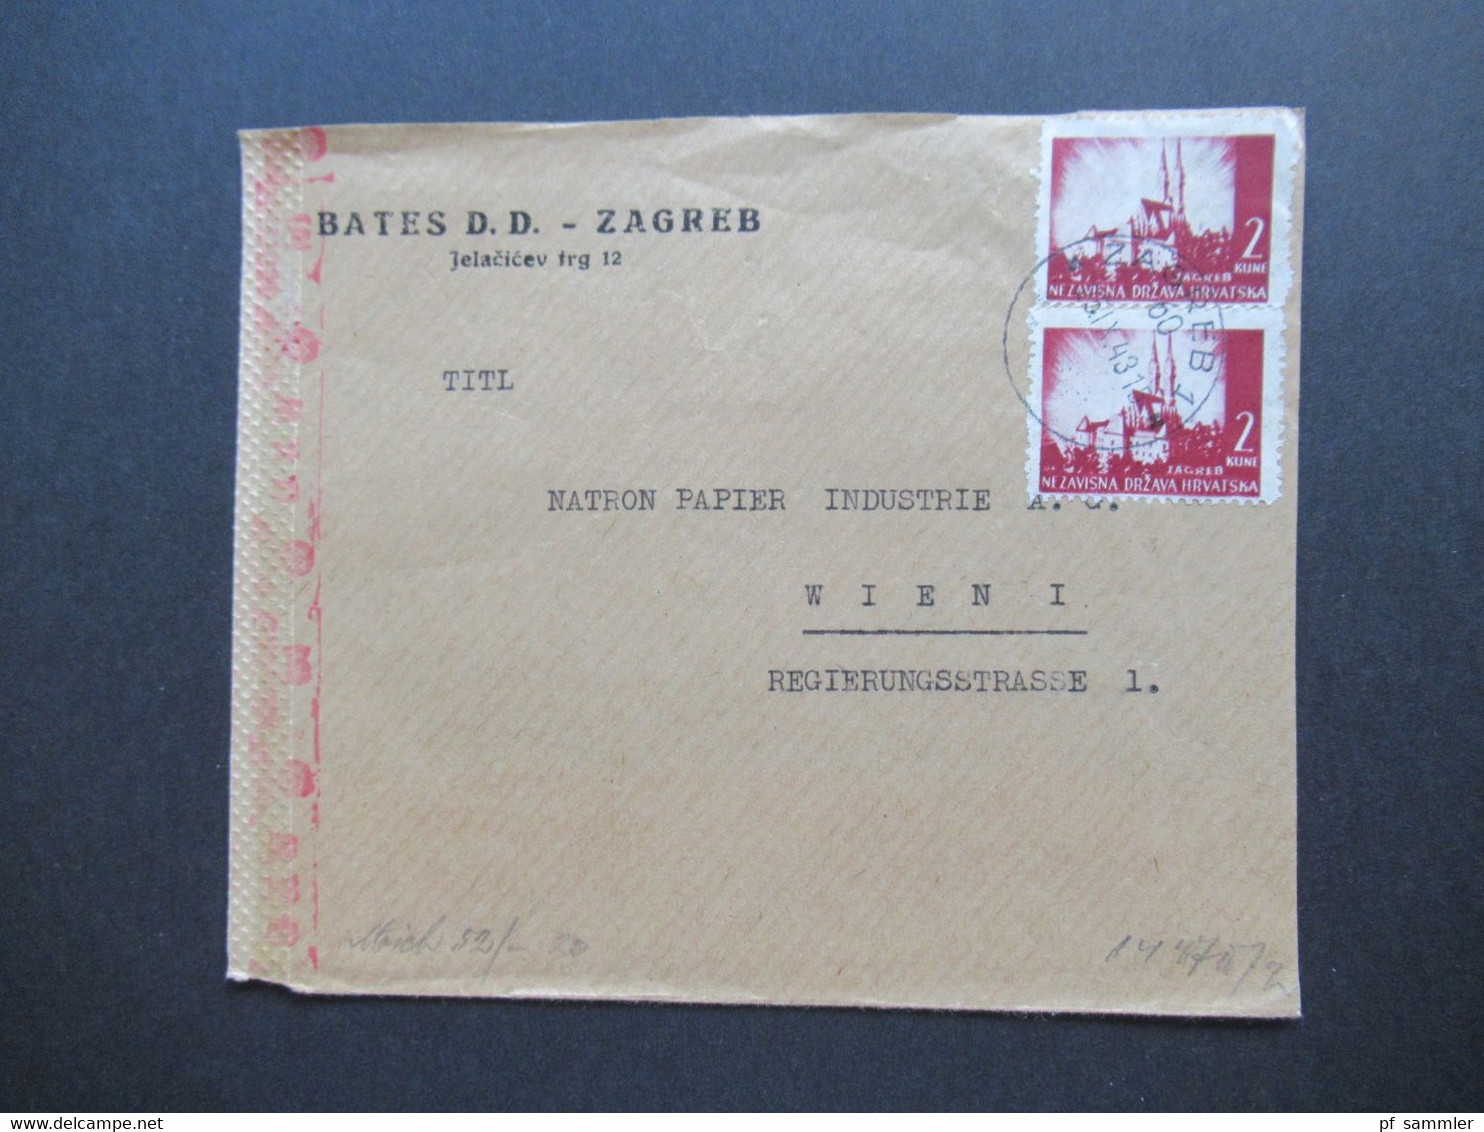 Kroatien / Hrvatska 1943 / 44 Zagreb - Wien Ostmark im 3. Reich 3 Briefvorderseiten VS mit OKW Zensur / Mehrfachzensur